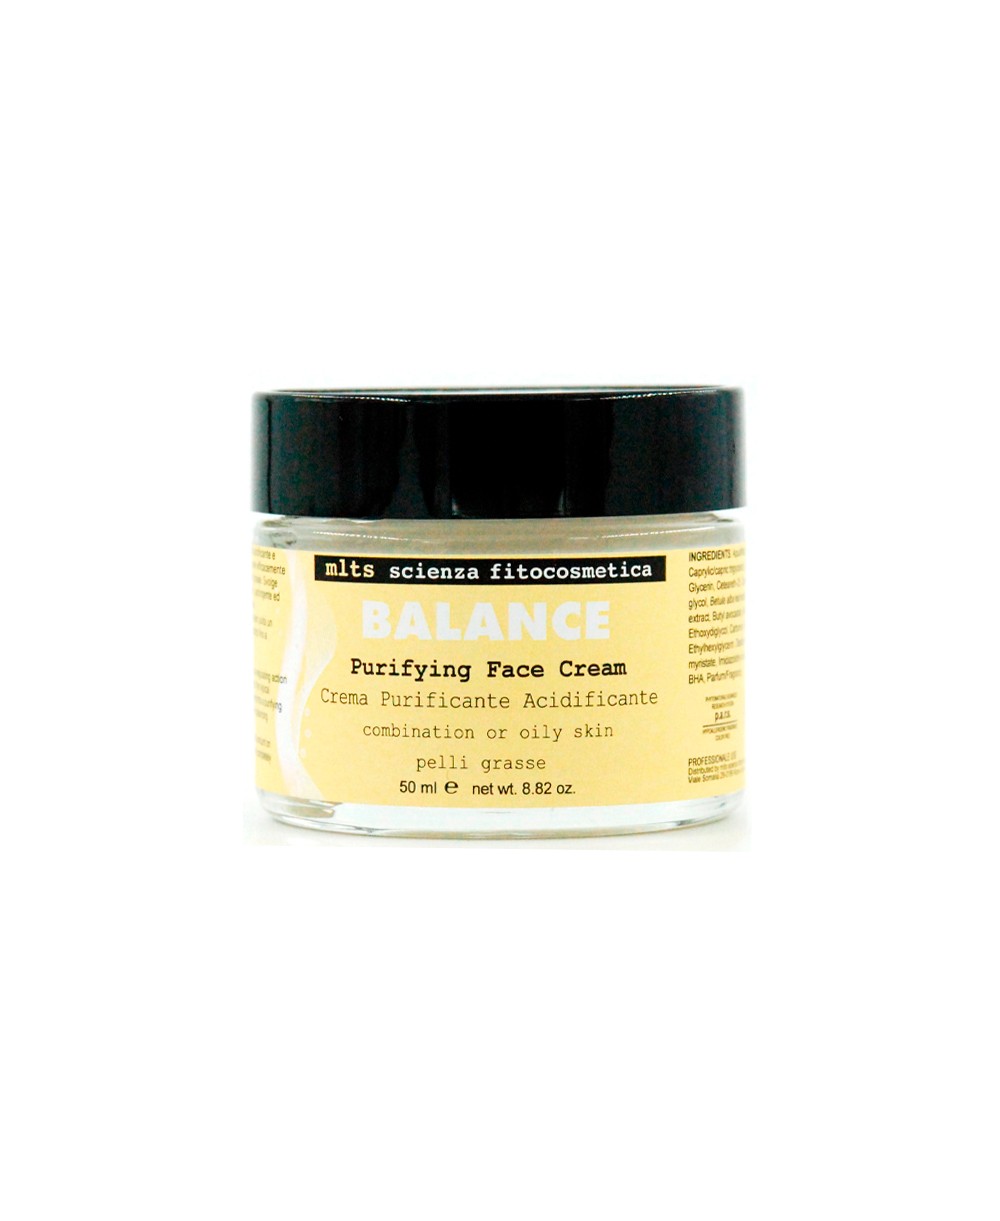 Purifying Face Cream Crema Purificante Acidificante - 50ml